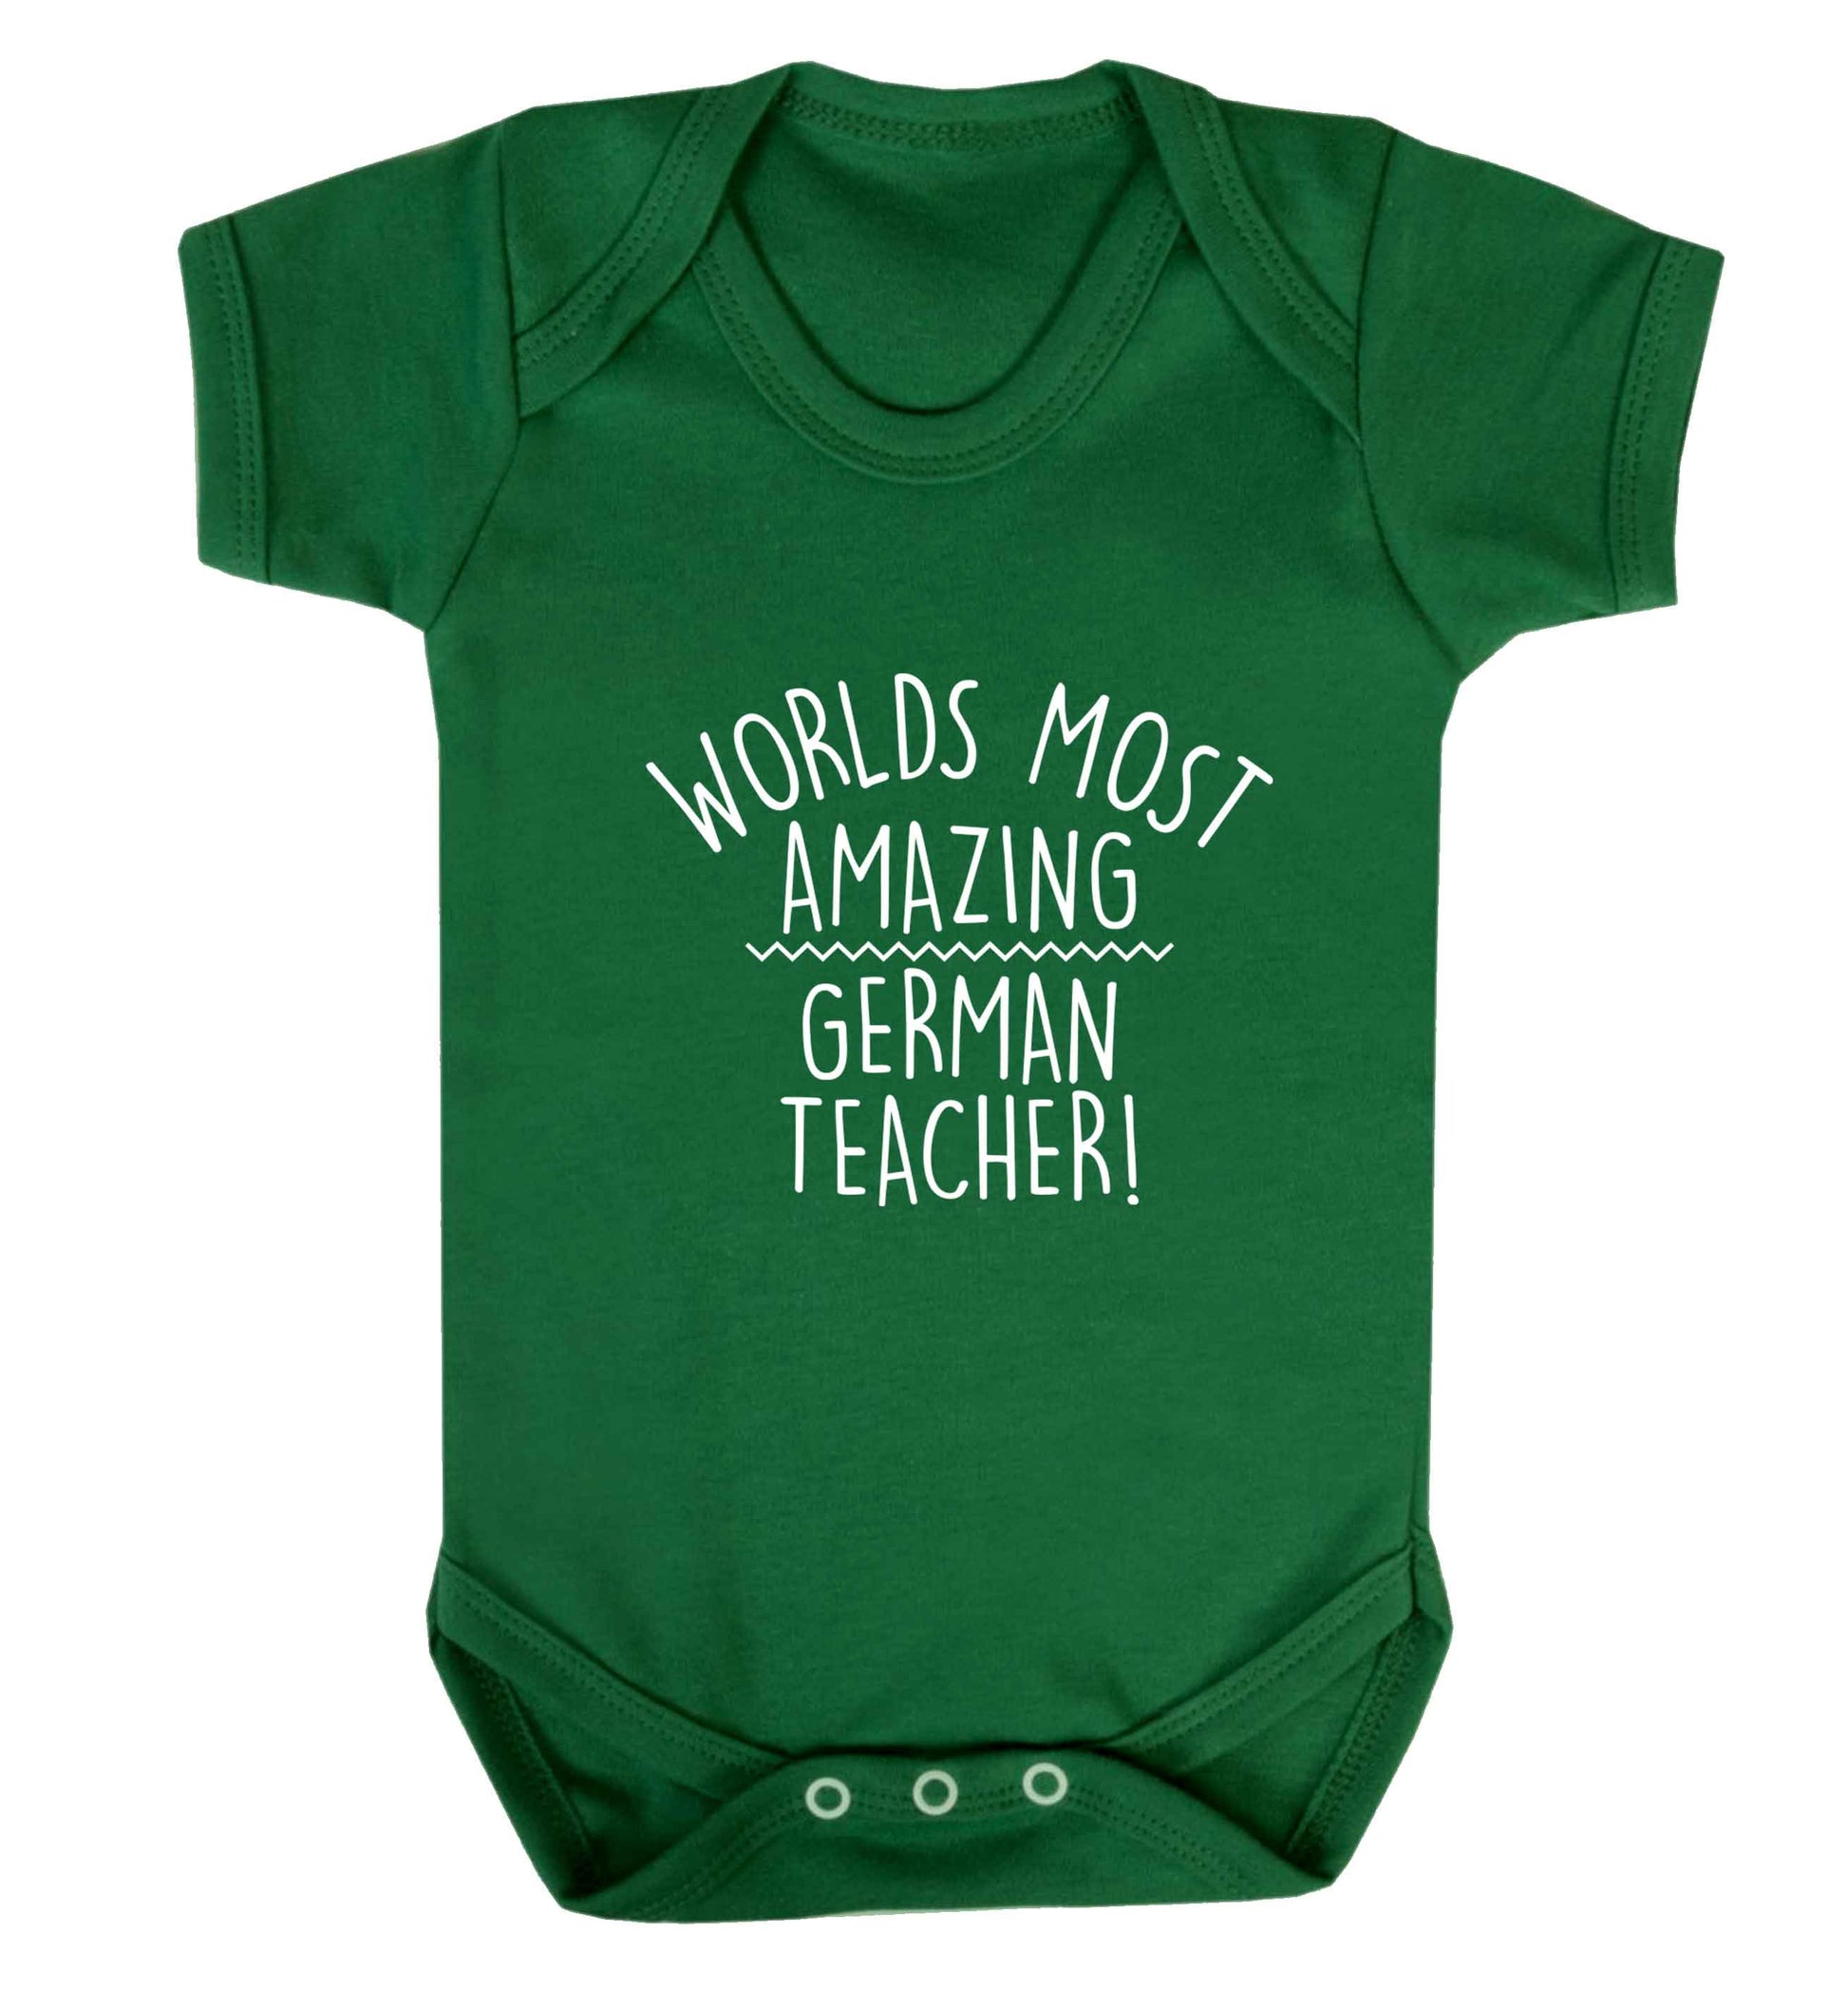 Worlds most amazing German teacher baby vest green 18-24 months